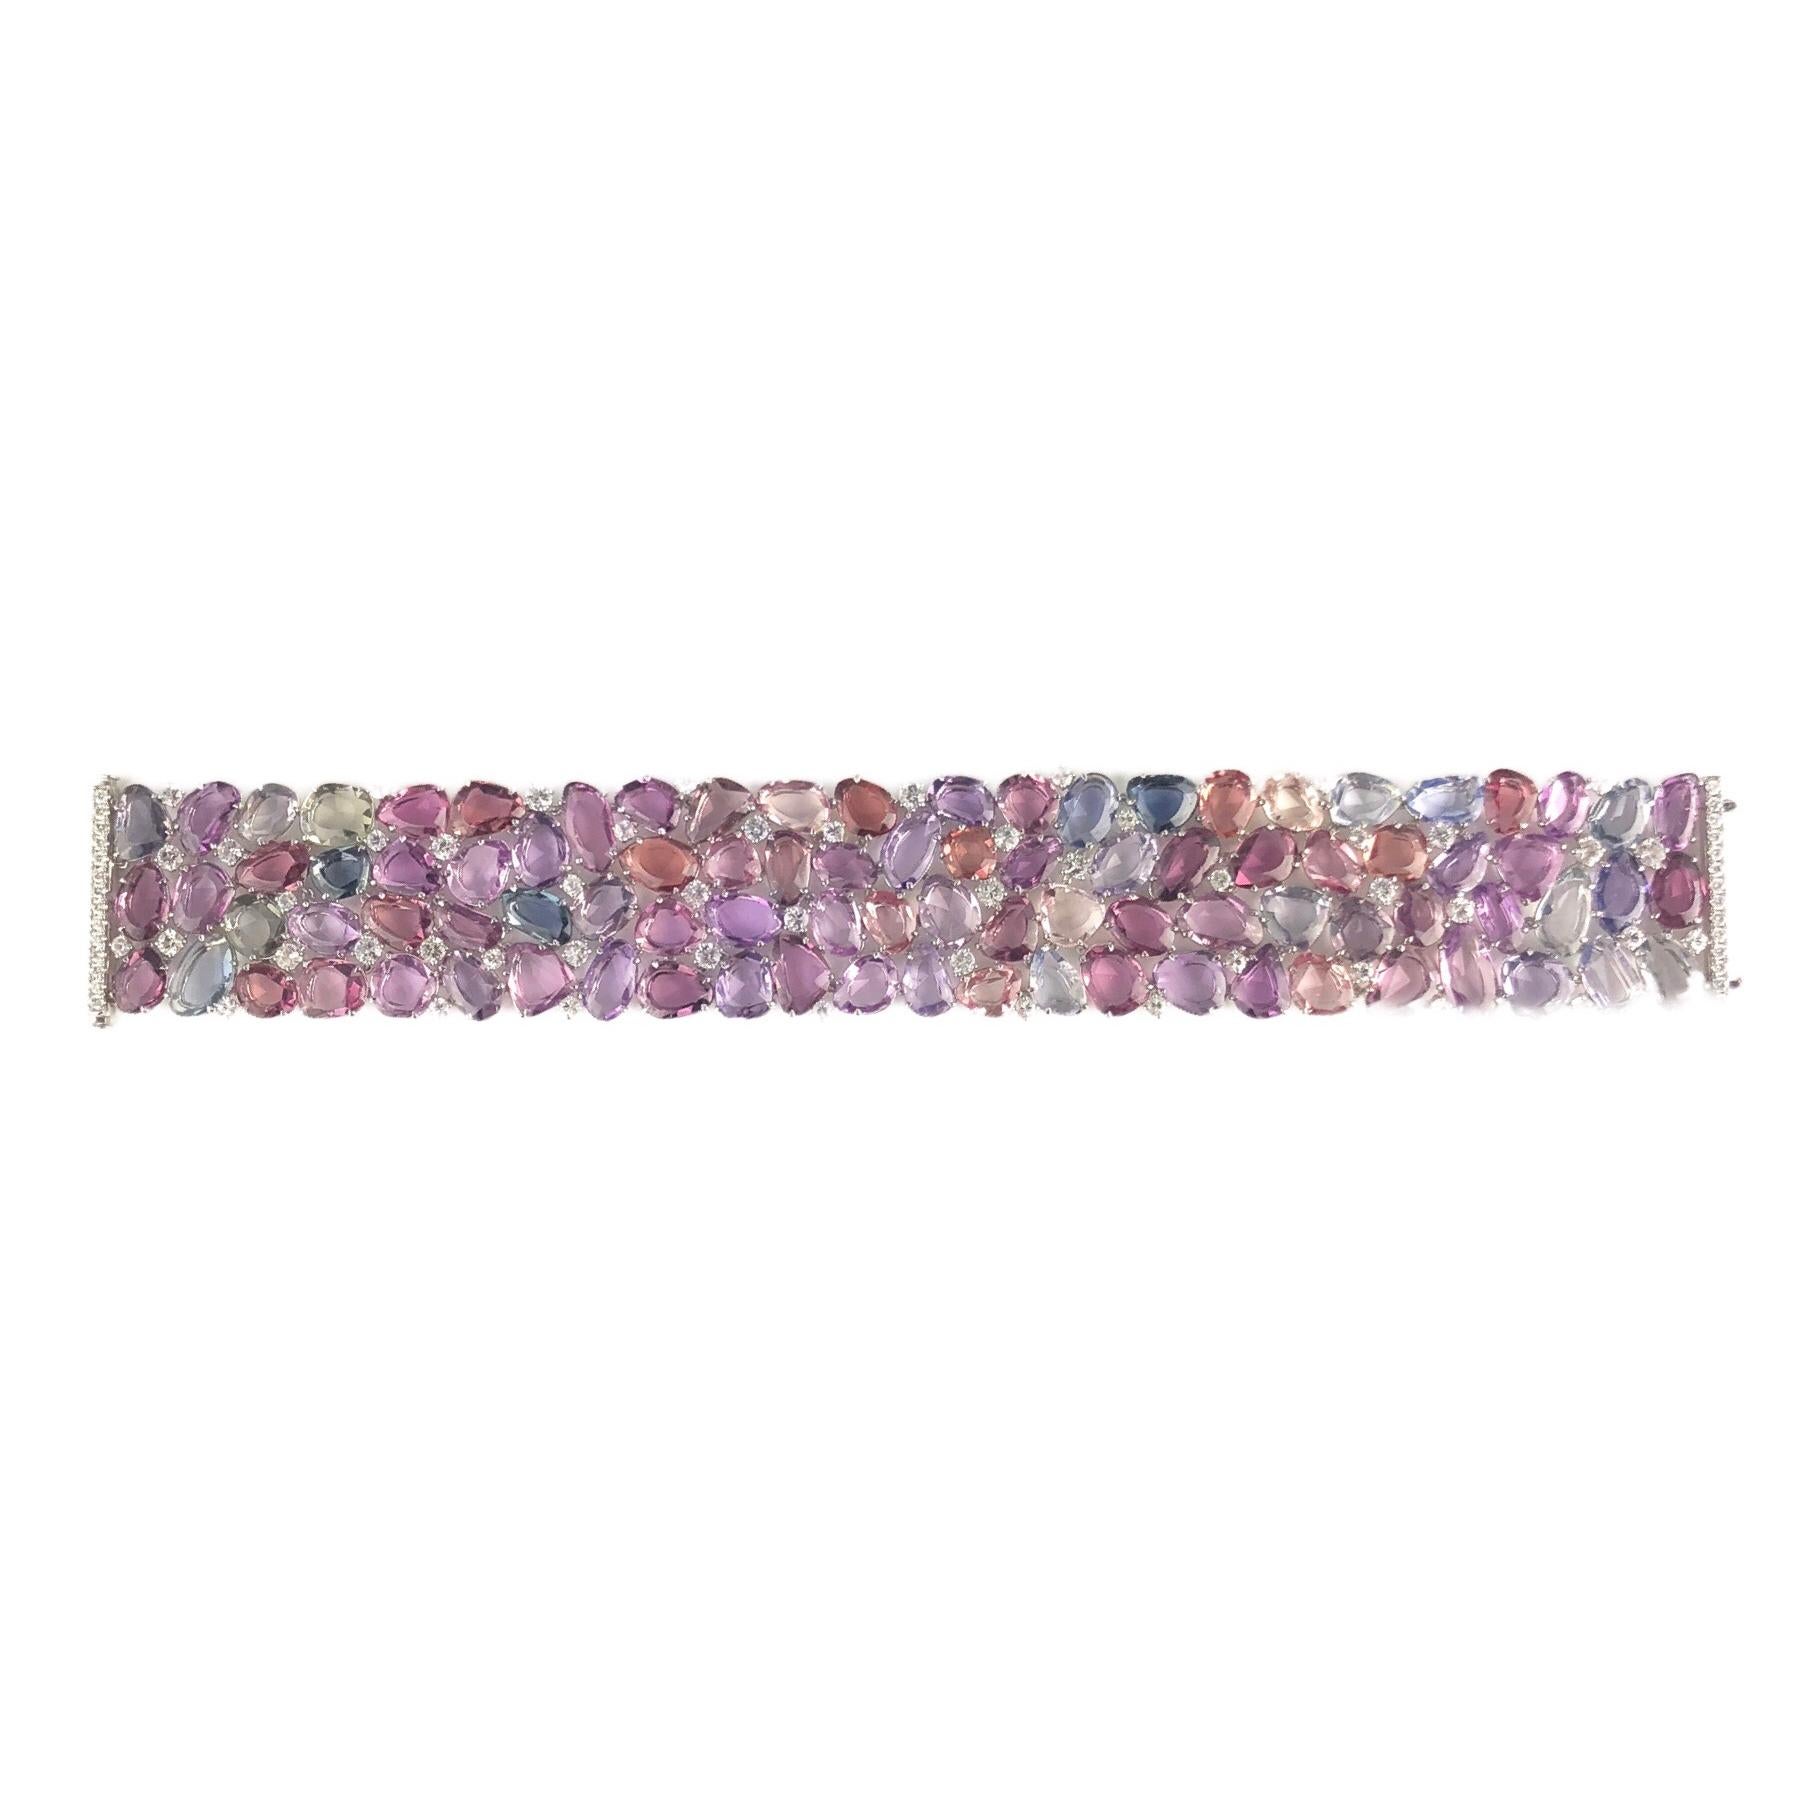 (DiamondTown) Dieses atemberaubende Armband besteht aus 96,05 Karat mehrfarbigen Saphiren. Die Saphirfarben sind verschiedene Schattierungen von Rosa, Violett, Grün, Blau, Gelb und Pfirsich, mit 51 weißen Saphiren in der Mischung als auch. 28 runde